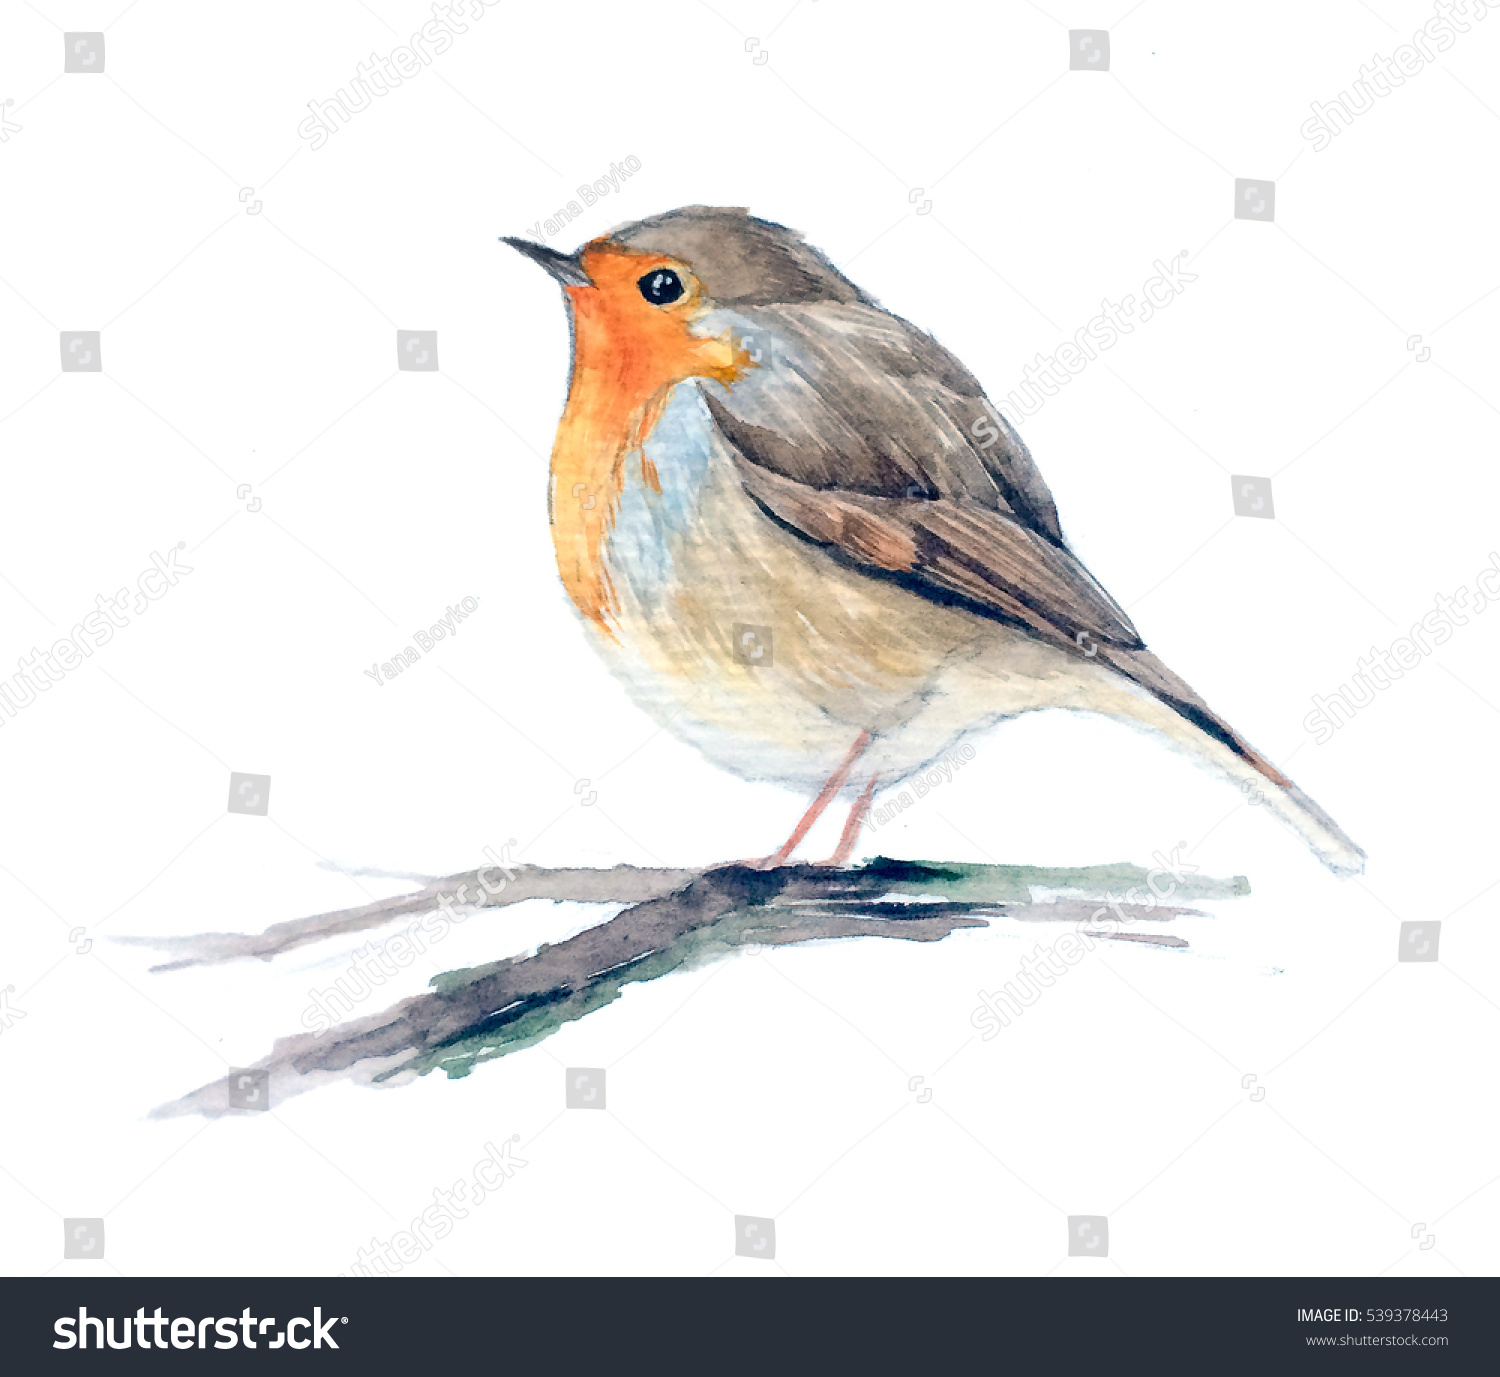 Robin Redbreast Bird On Branch European Stock Illustration 539378443 ...